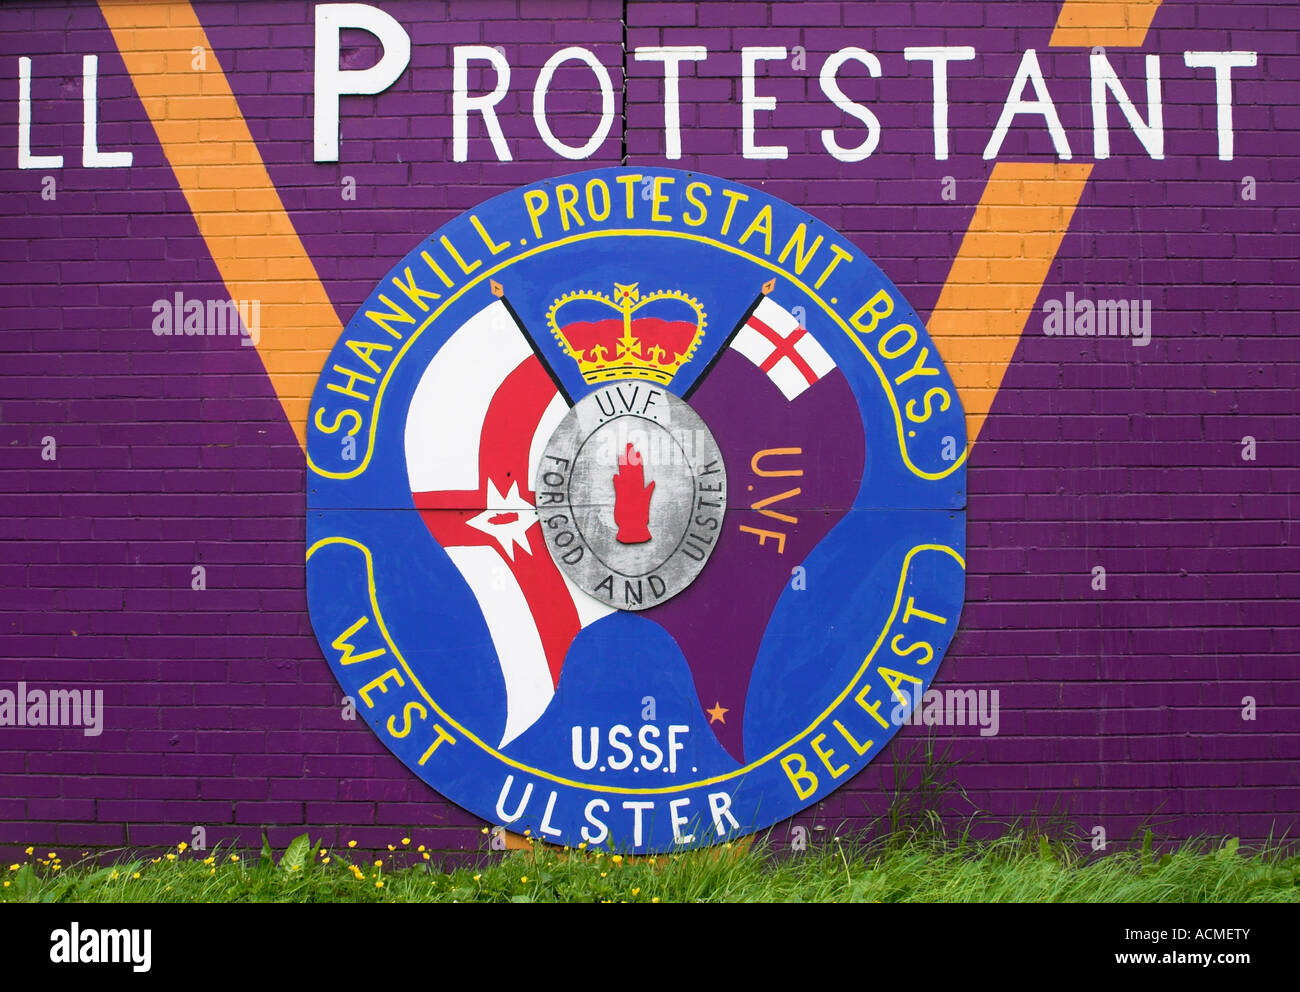 V dettaglio da un murale UVF UVF Ulster Volunteer Force e SPB Shankill protestante murale ragazzi Foto Stock